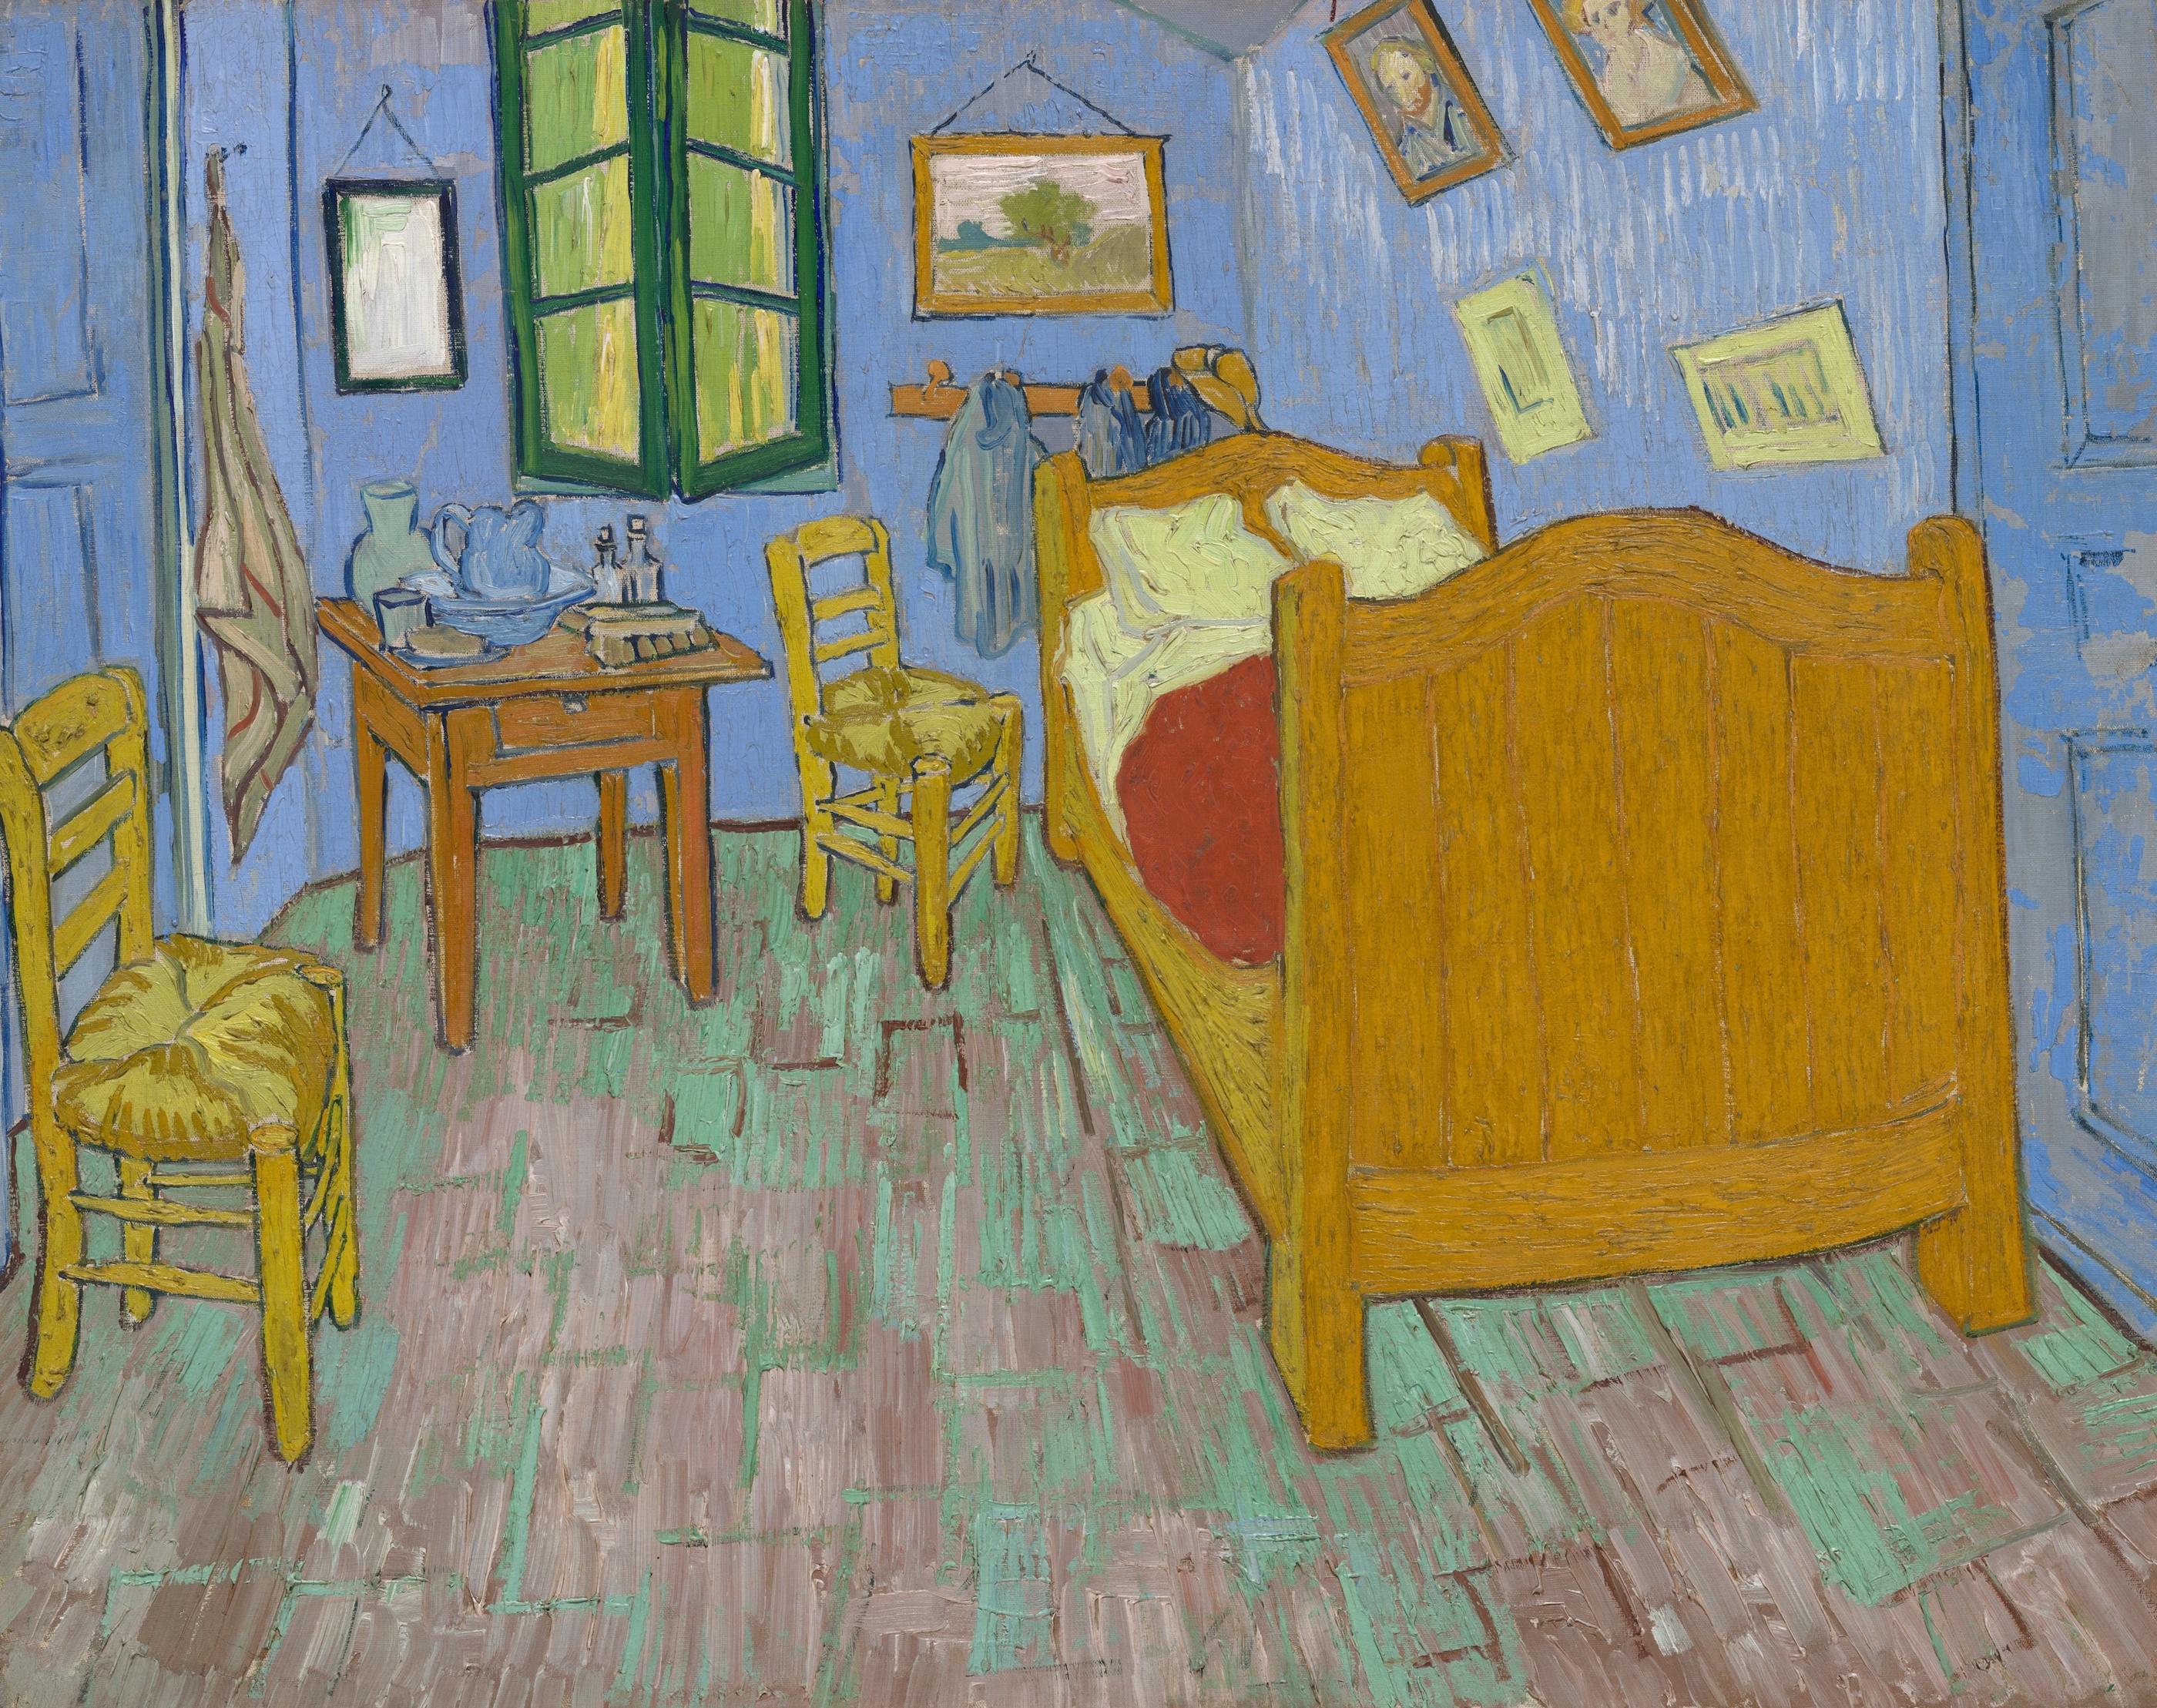 아를의 침실(The Bedroom) by 빈센트 반 고흐 - 1889 - 73.6 × 92.3 cm 